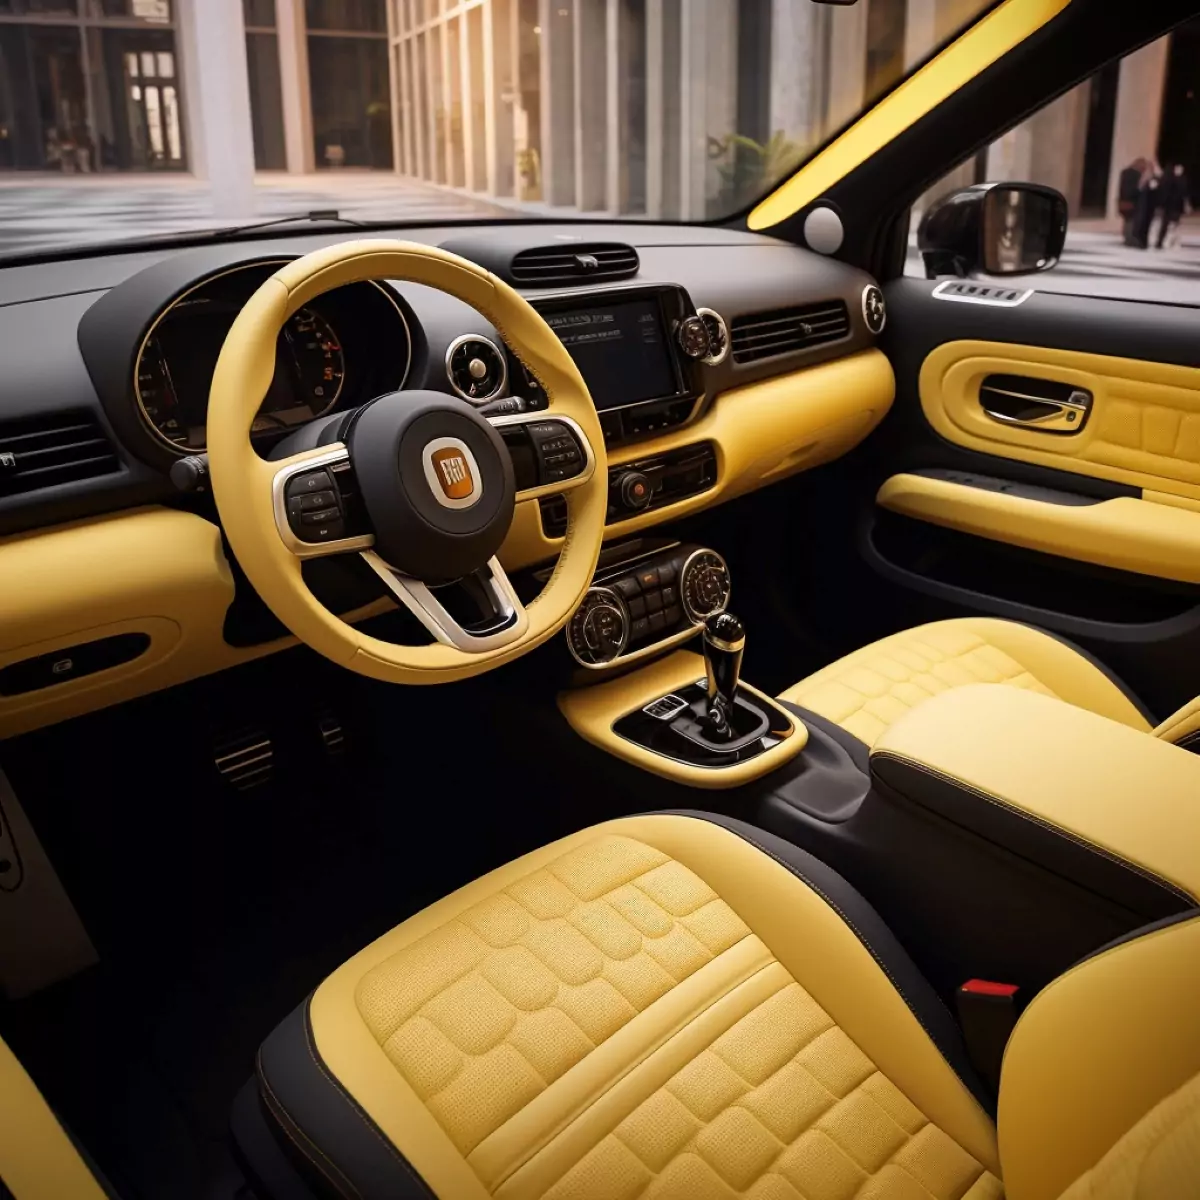 Interior amarelo do novo Fiat 147 Concept (Uma Abordagem Moderna) Foto Projeção: Planet Cars